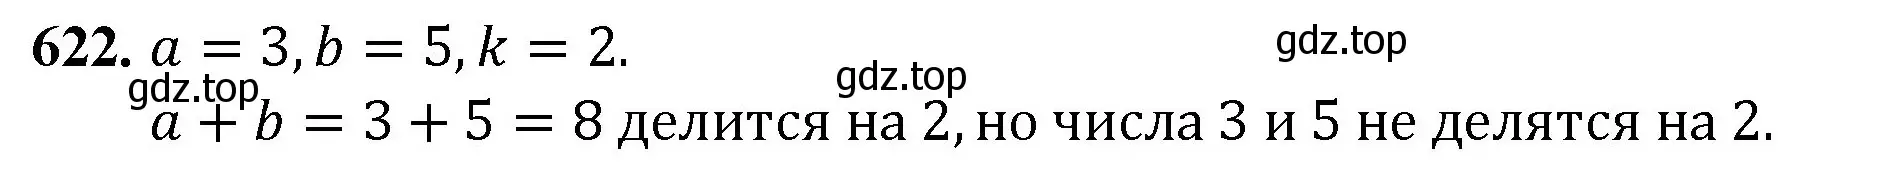 Решение номер 622 (страница 145) гдз по математике 5 класс Мерзляк, Полонский, учебник